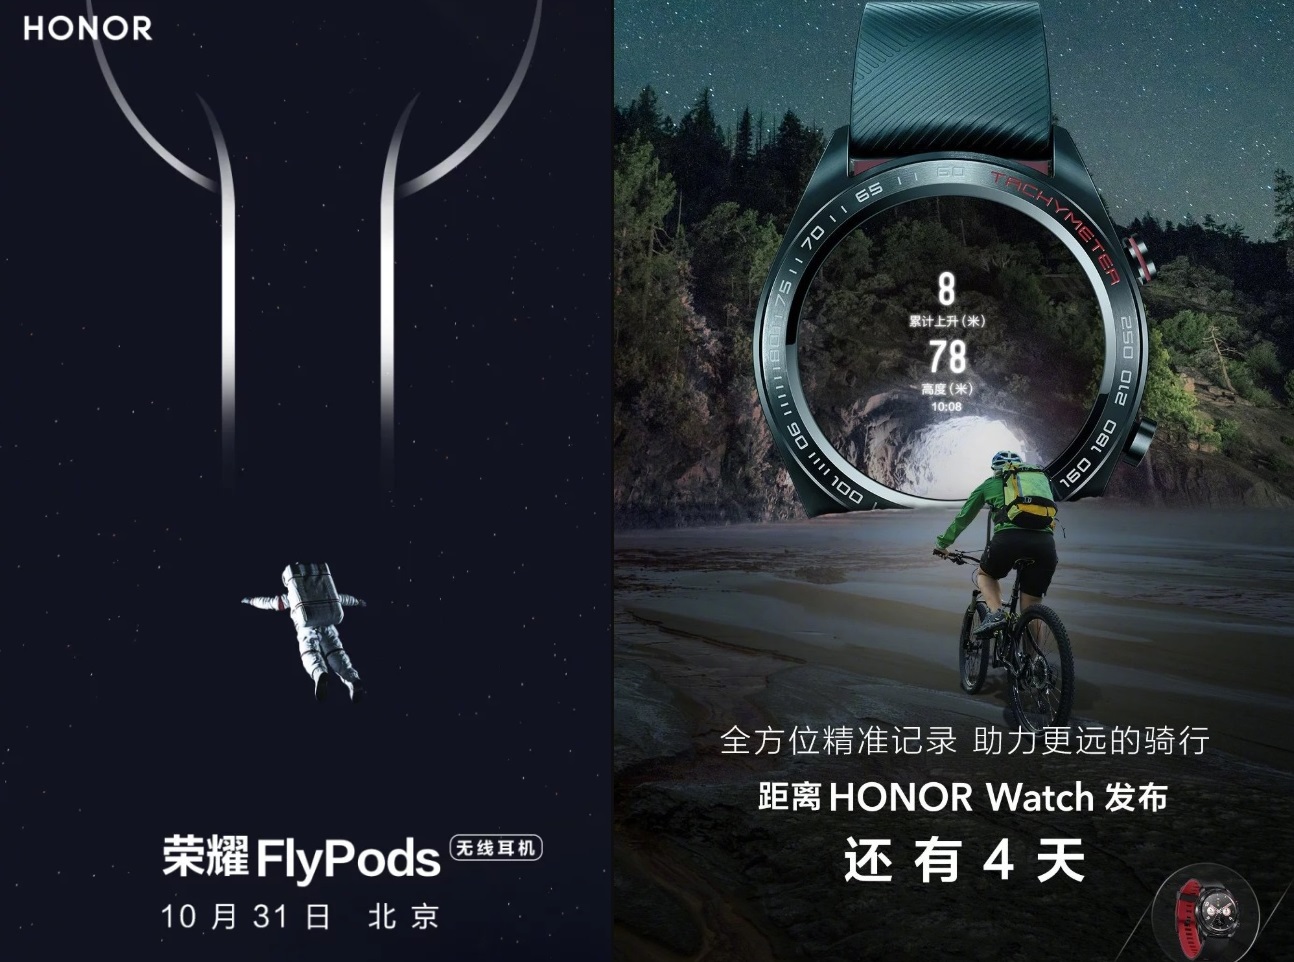 Honor Watch akıllı saat ve Honor Flypods kablosuz kulaklık detaylanıyor